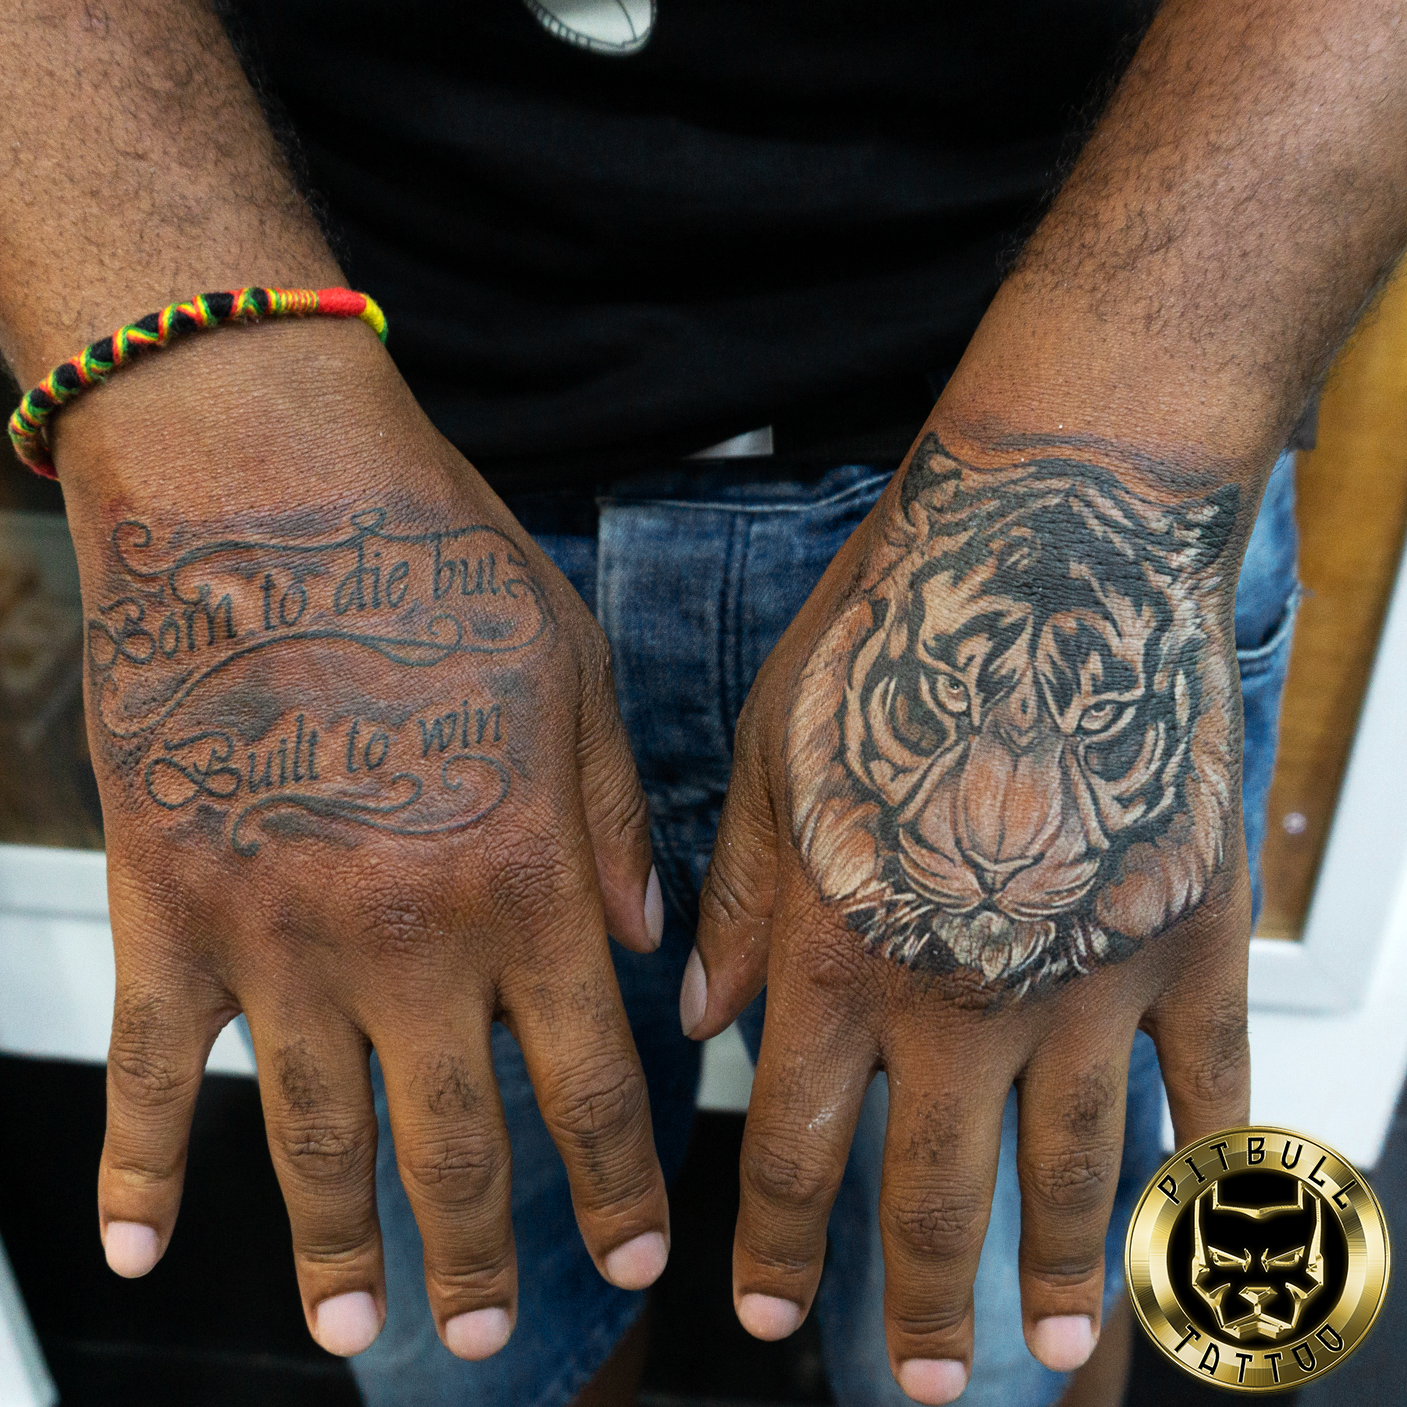 Dark Skin Tone Tattoo Specializations » Visible tattoo on dark skin